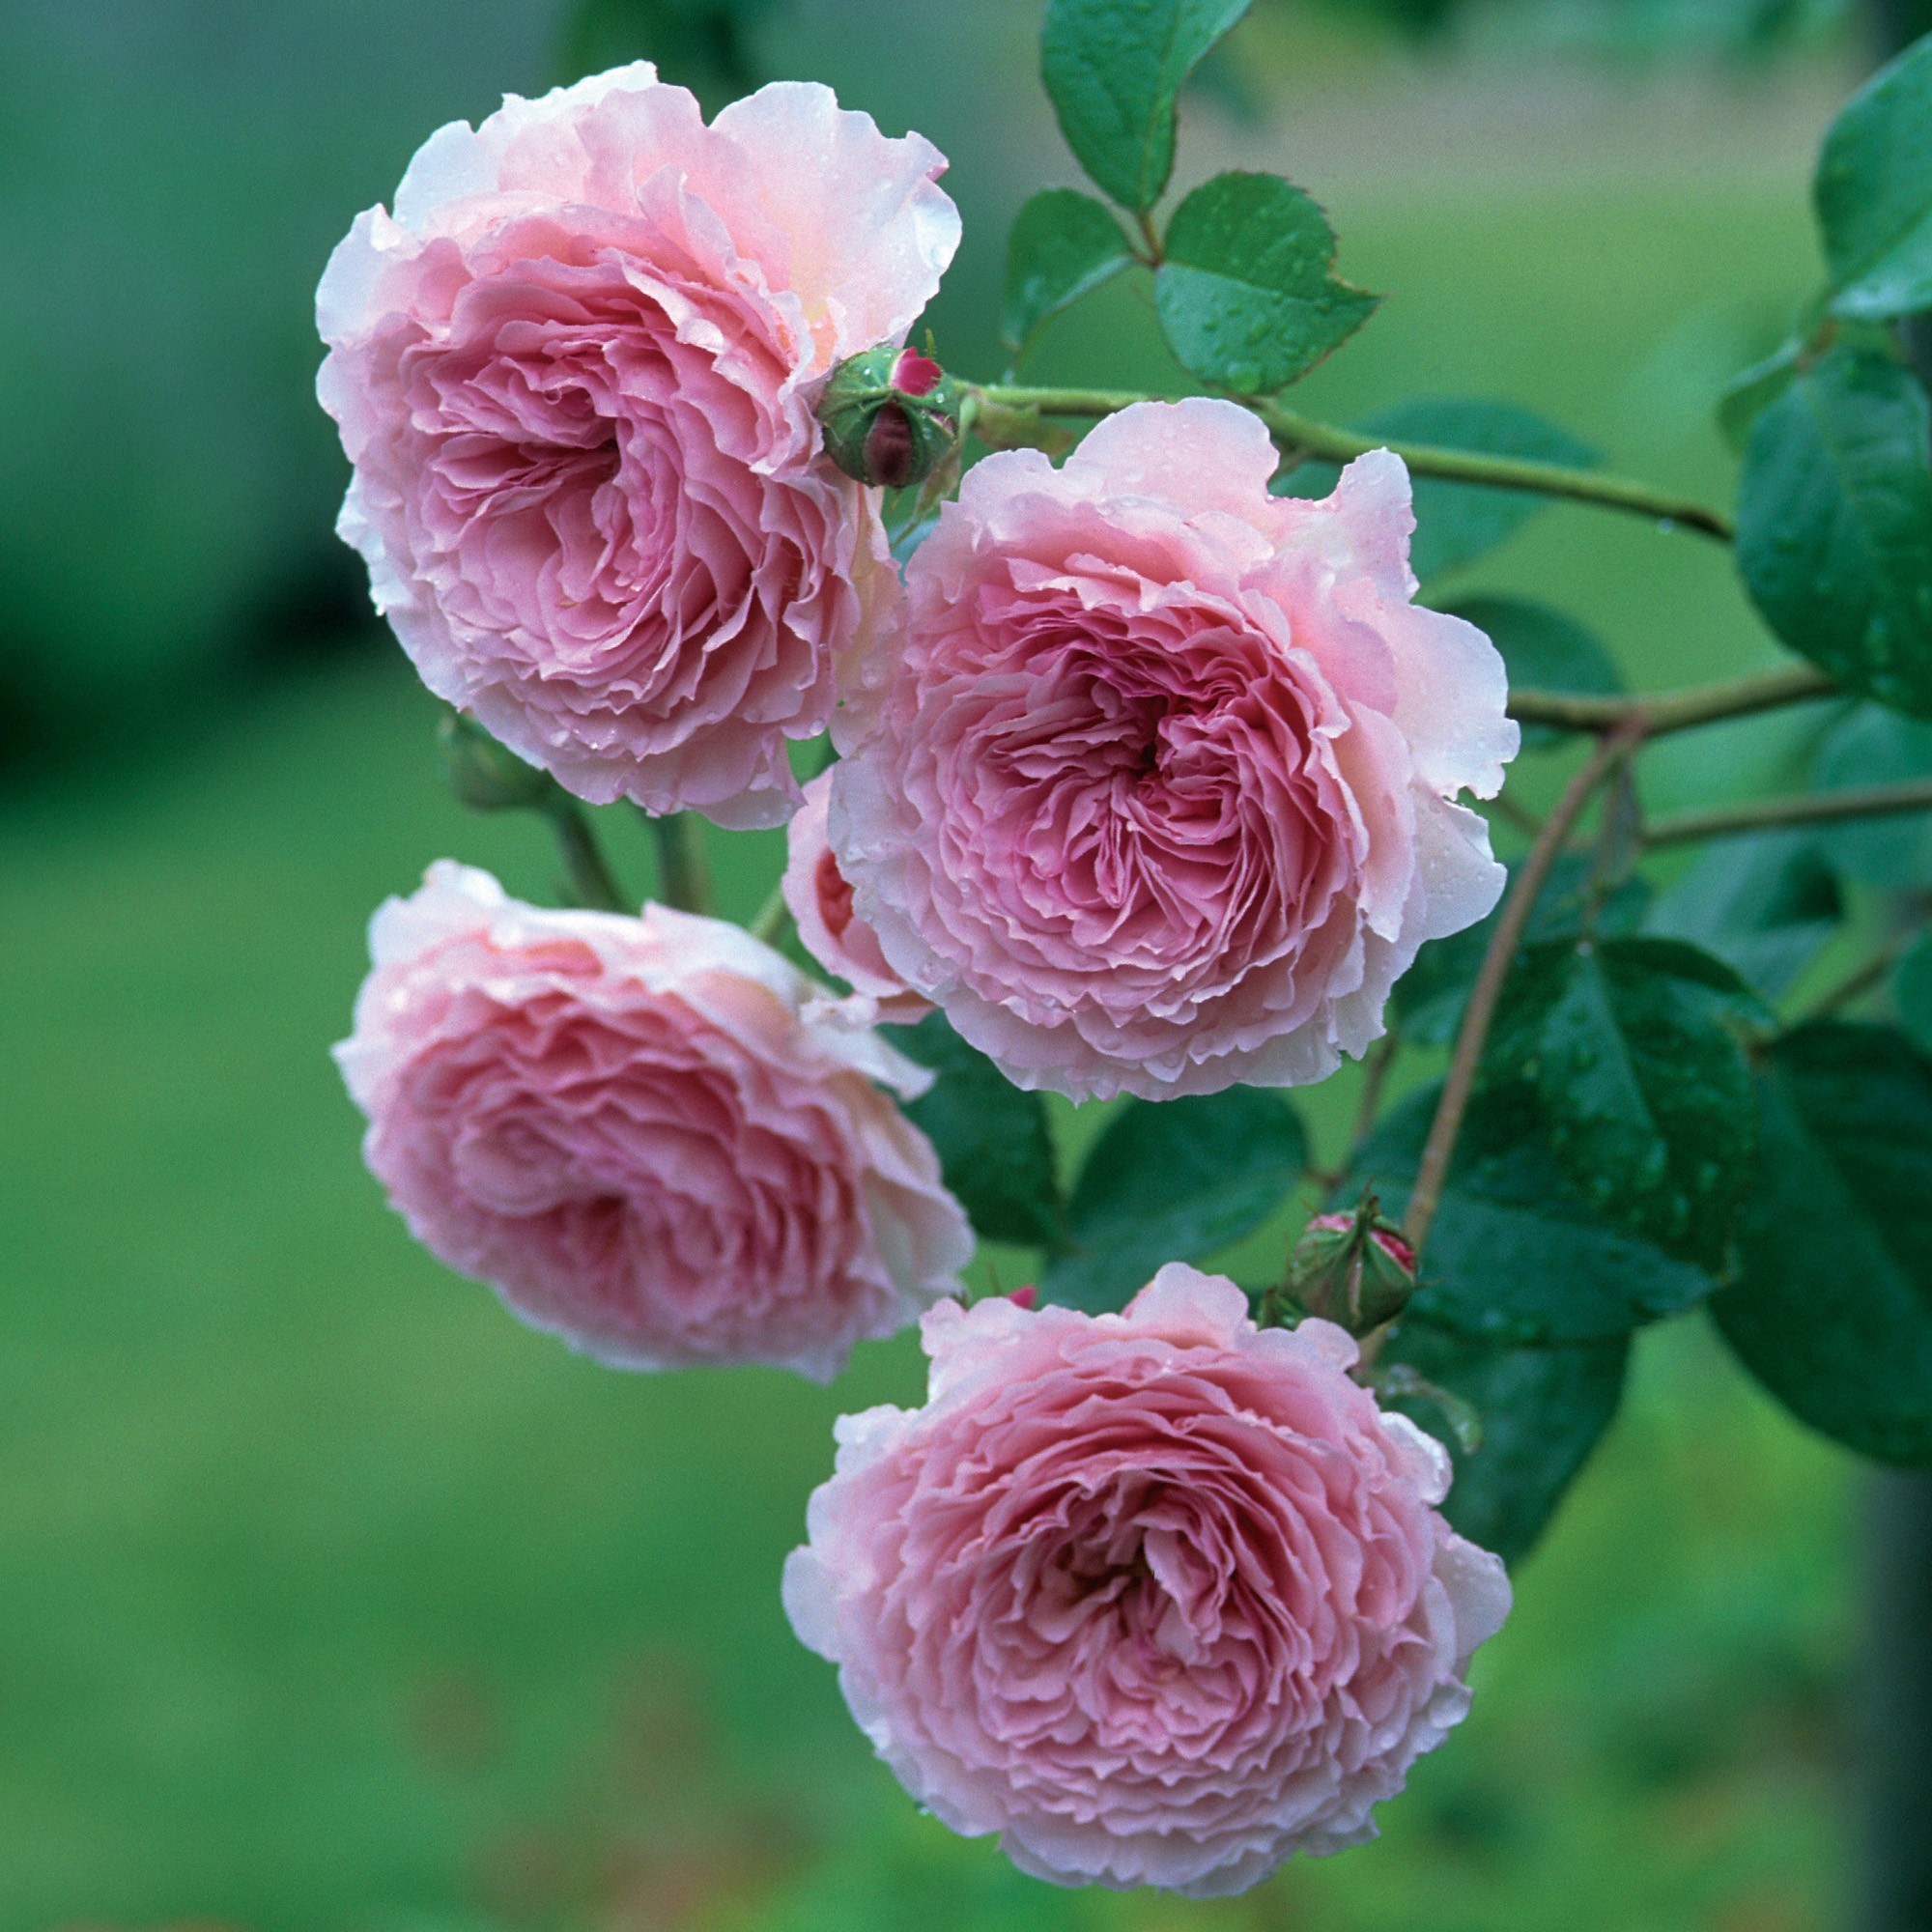 Tổng hợp hình ảnh hoa hồng leo đẹp nhất - Ảnh đẹp hoa hồng